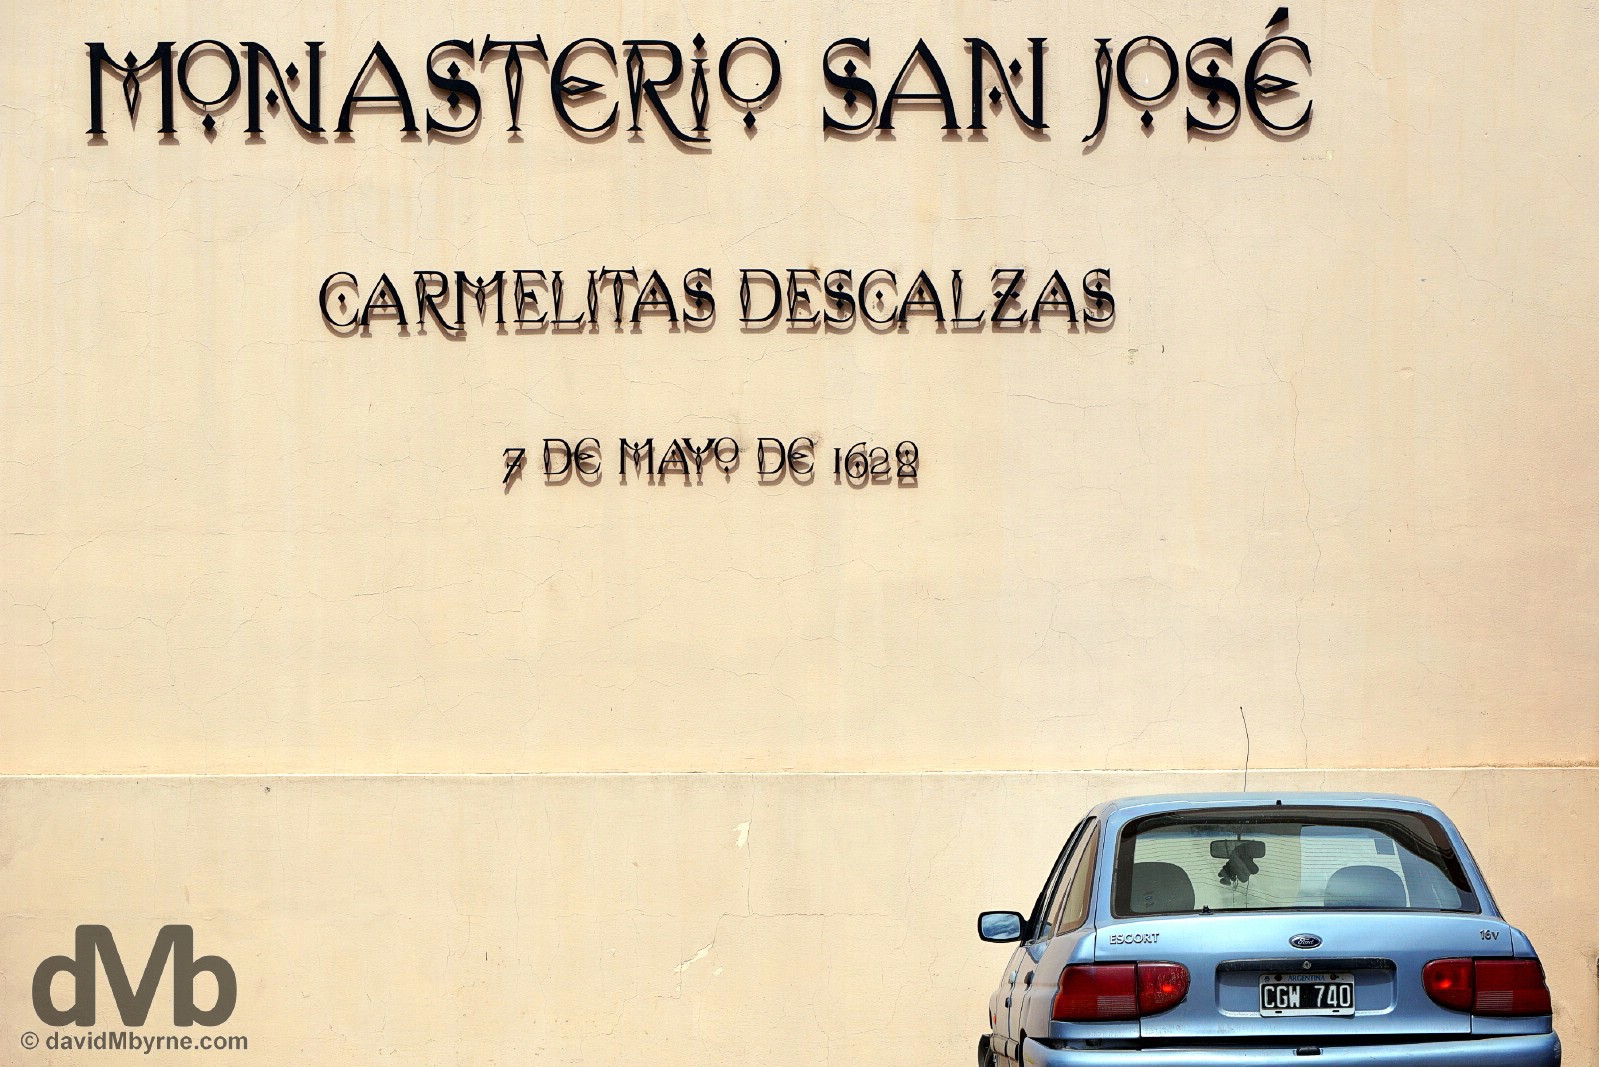 The 1628 Monastero San Jose, a working Carmelite monastery in Cordoba, Argentina. September 24, 2015.